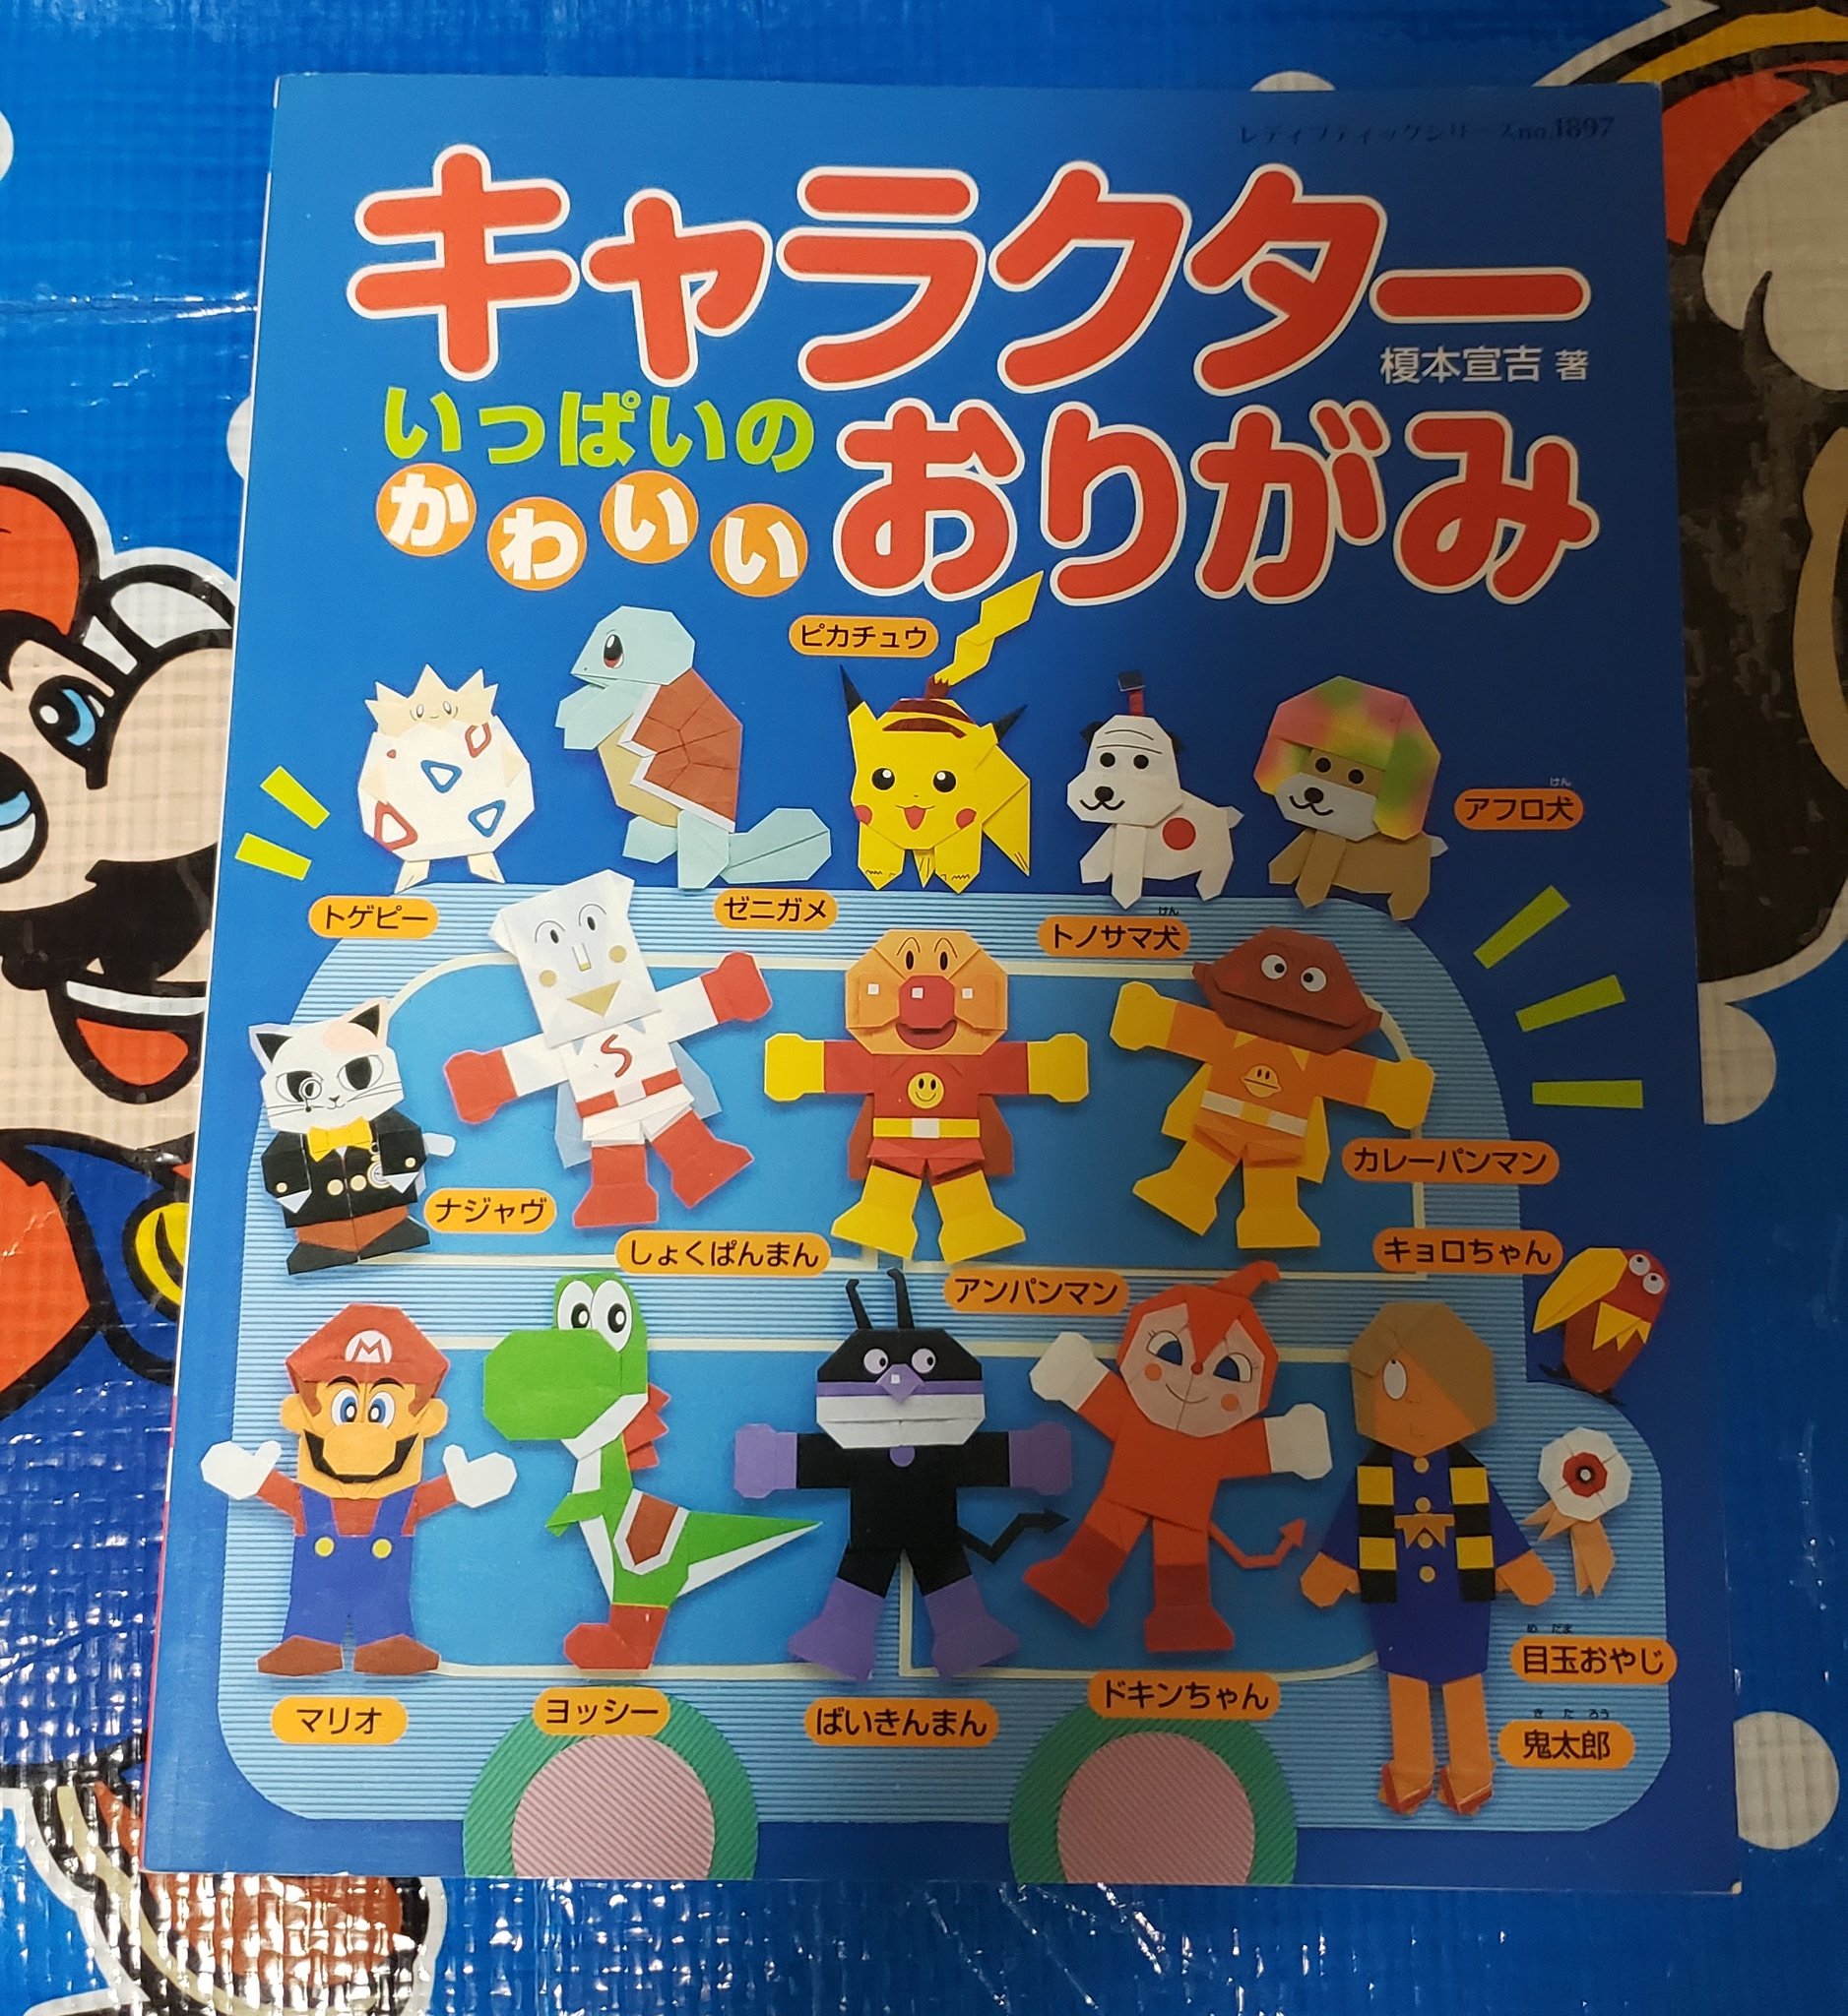 タンジェント Mario Collector キャラクター折り紙本を入手 マリオとヨッシーの折り方 も載っています 04年の時点でマリオとヨッシーはオリガミに魂を売っていたのであった 完